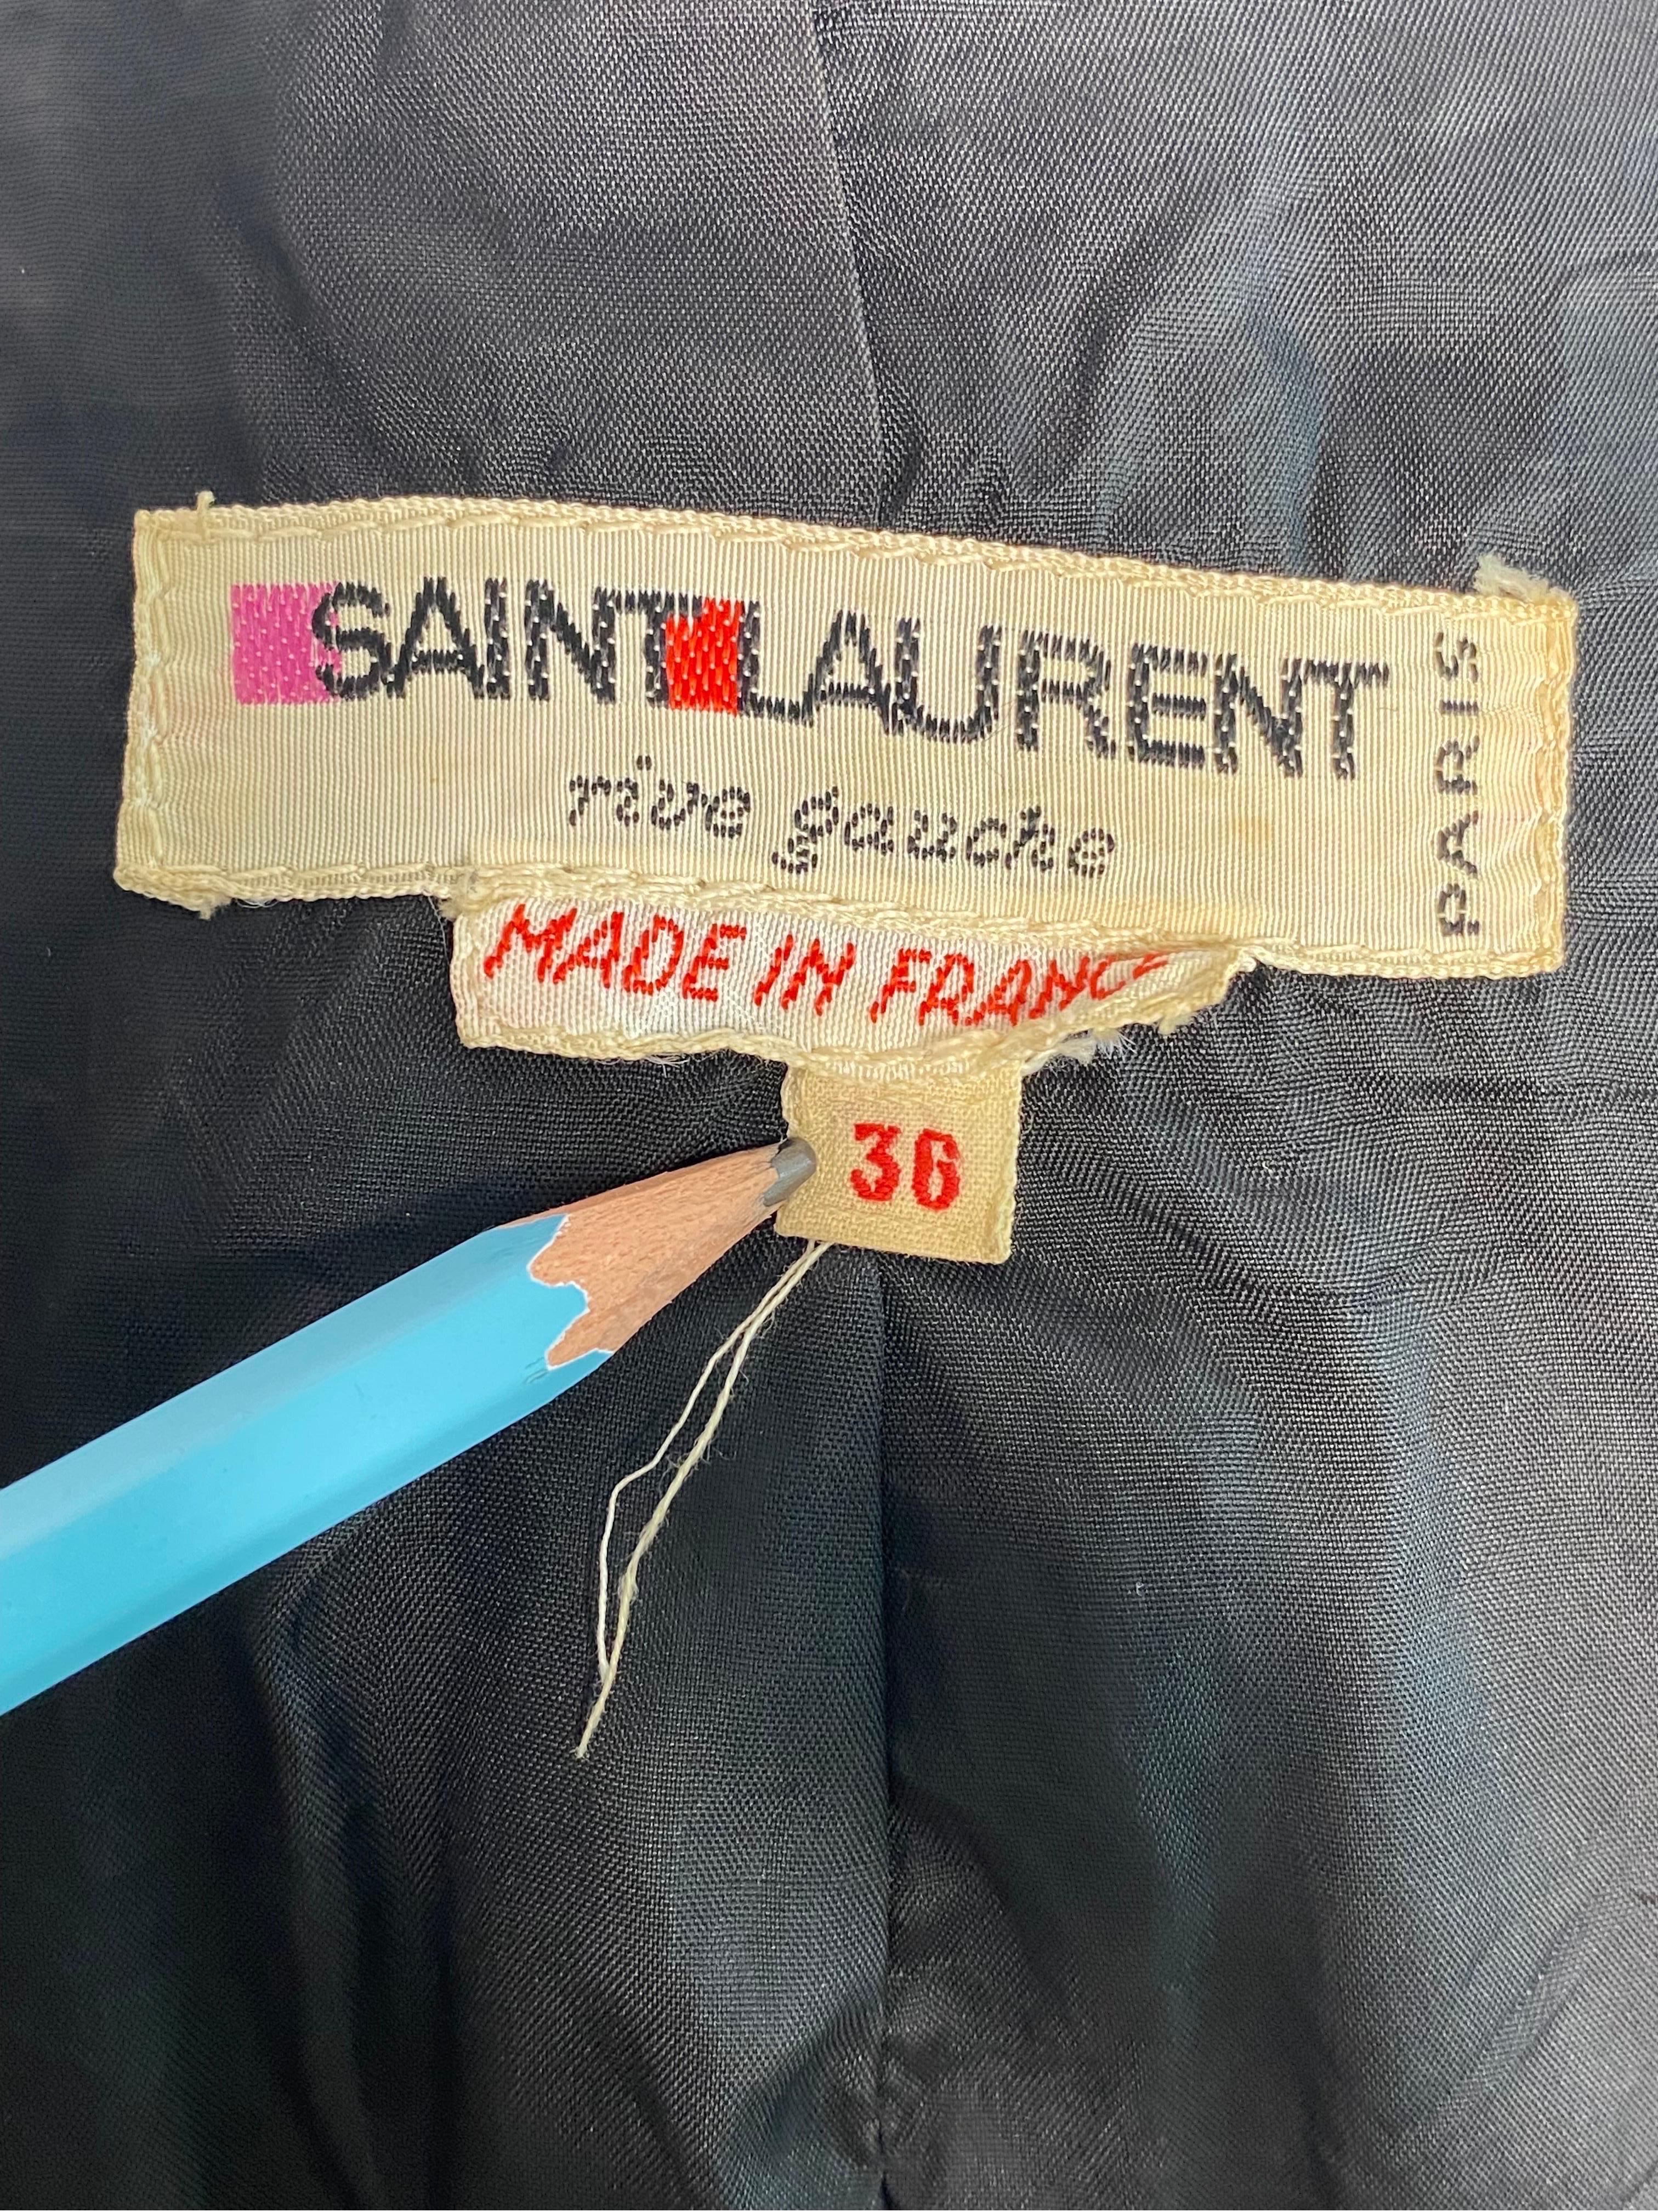 Yves saint Laurent rive gauche short velvet jacket circa 70 4